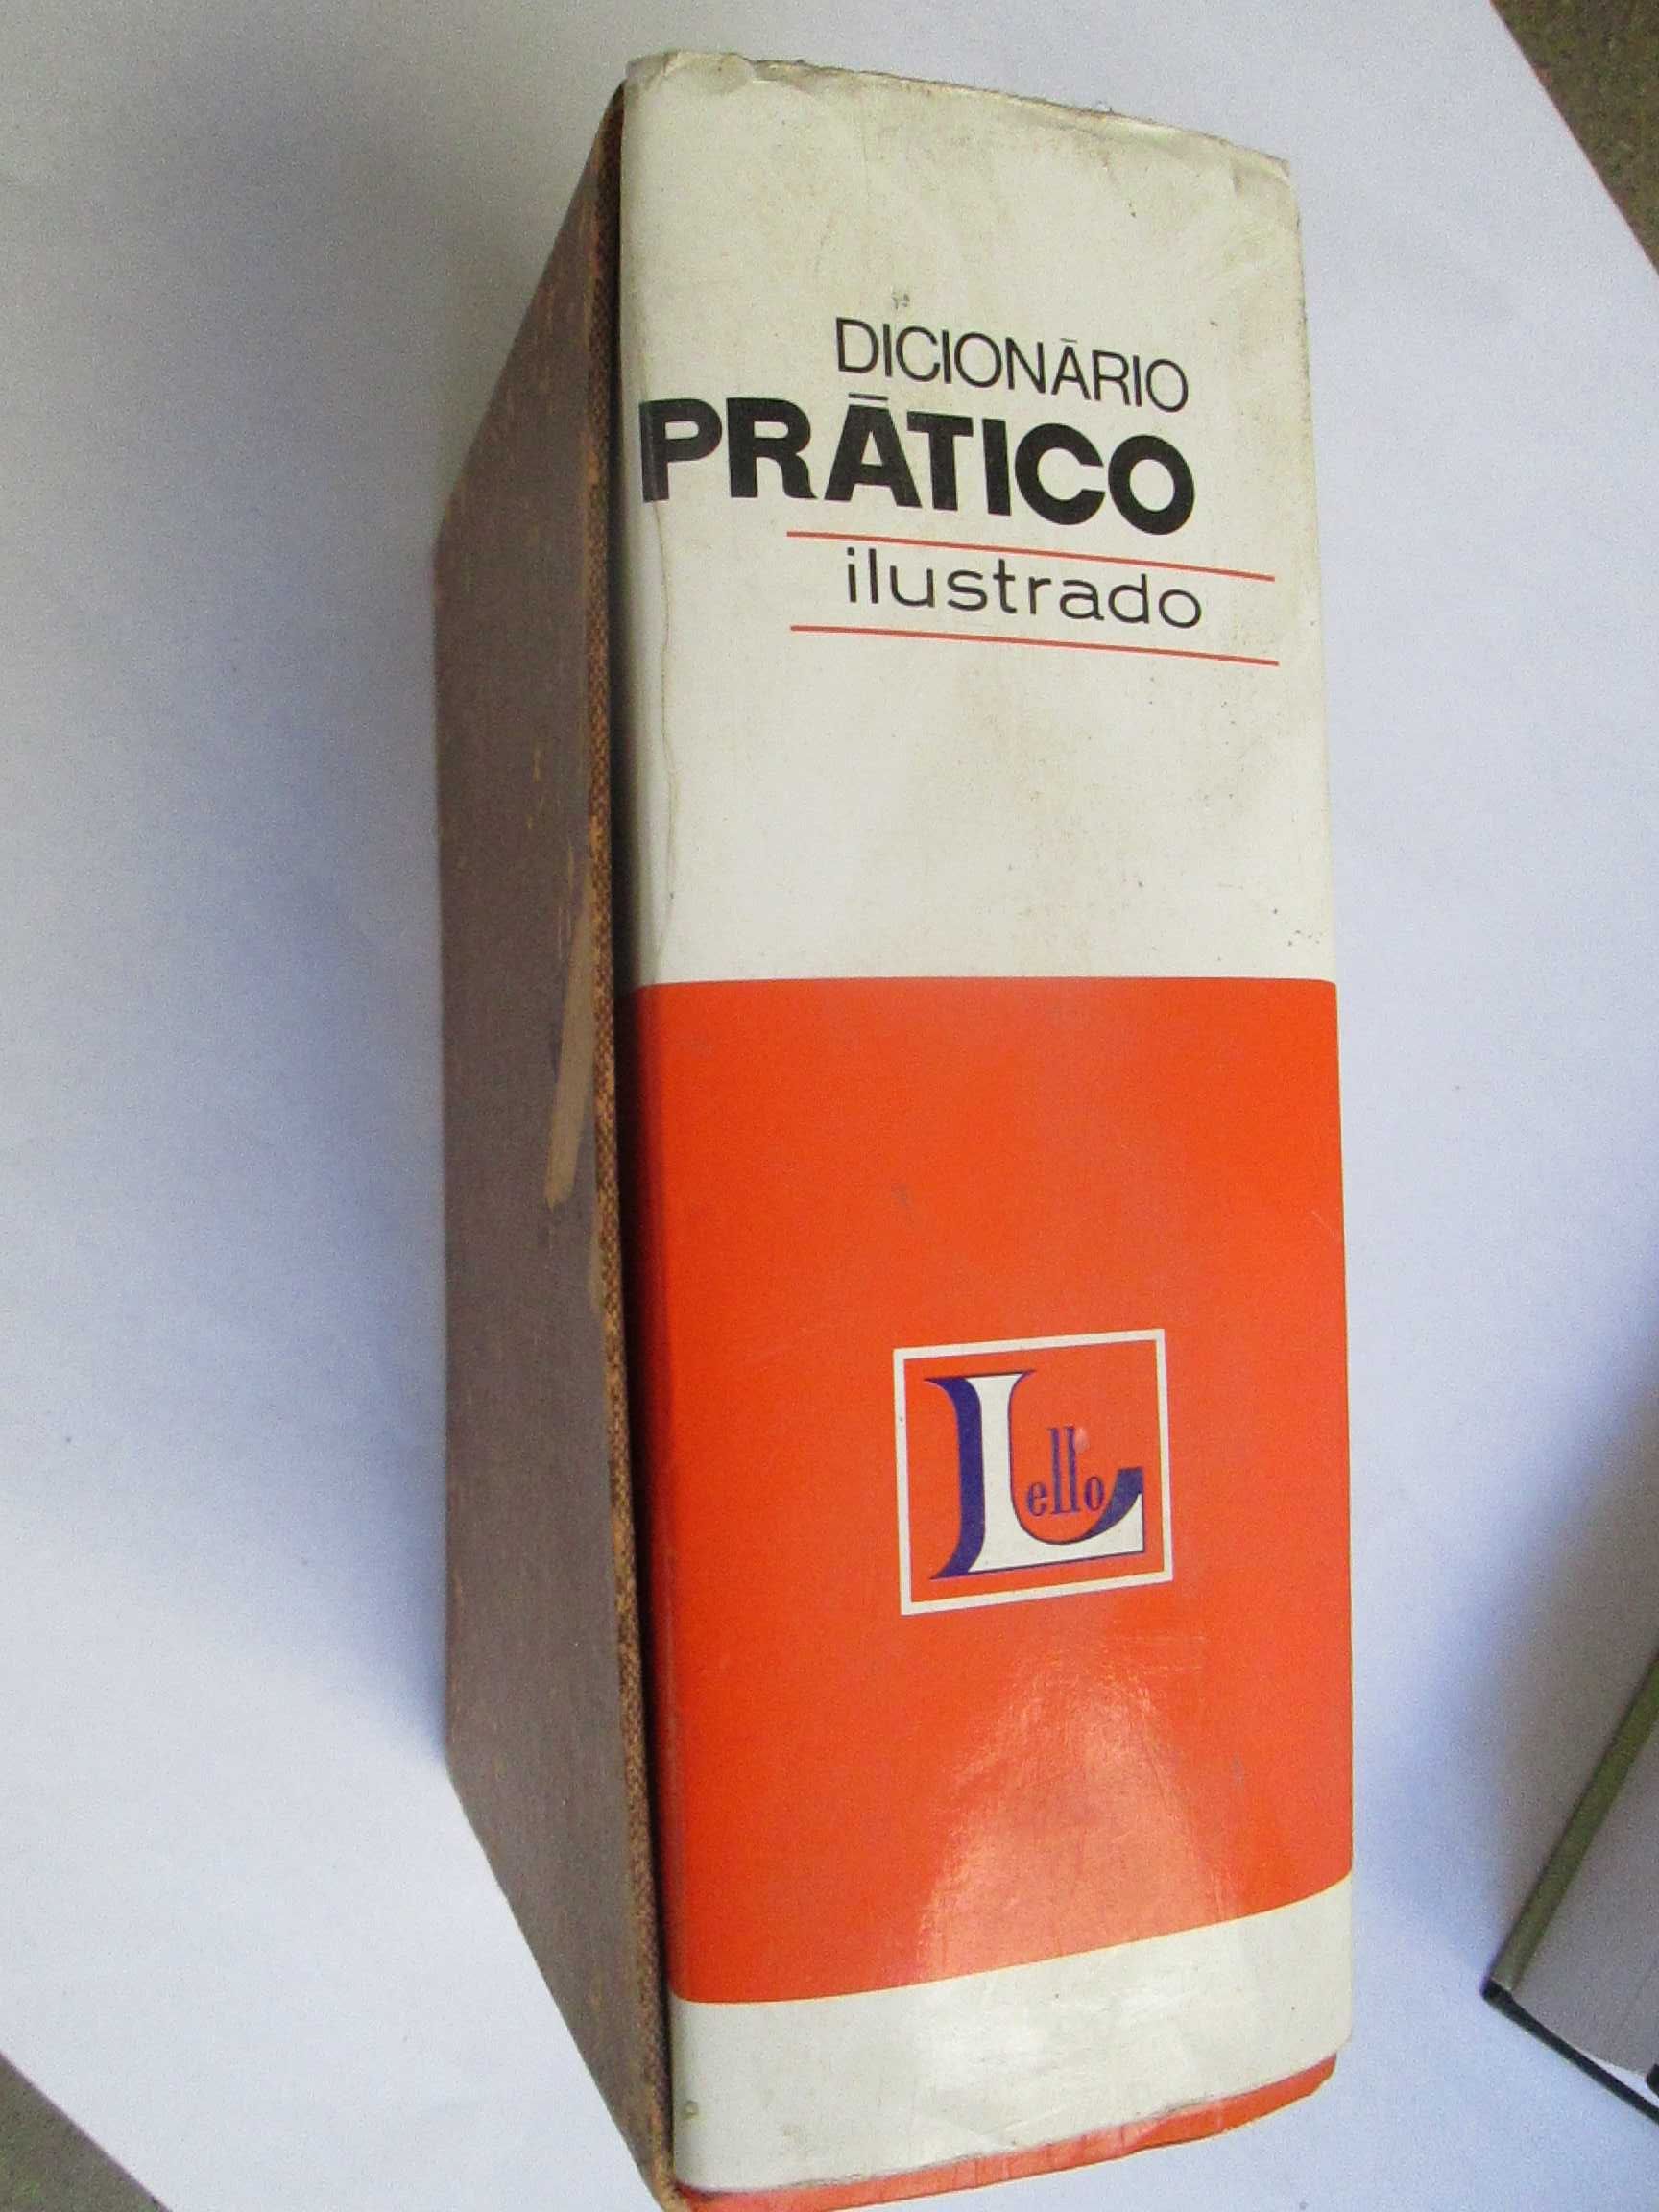 Dicionário Prático Ilustrado Lello, edição encadernada em caixa